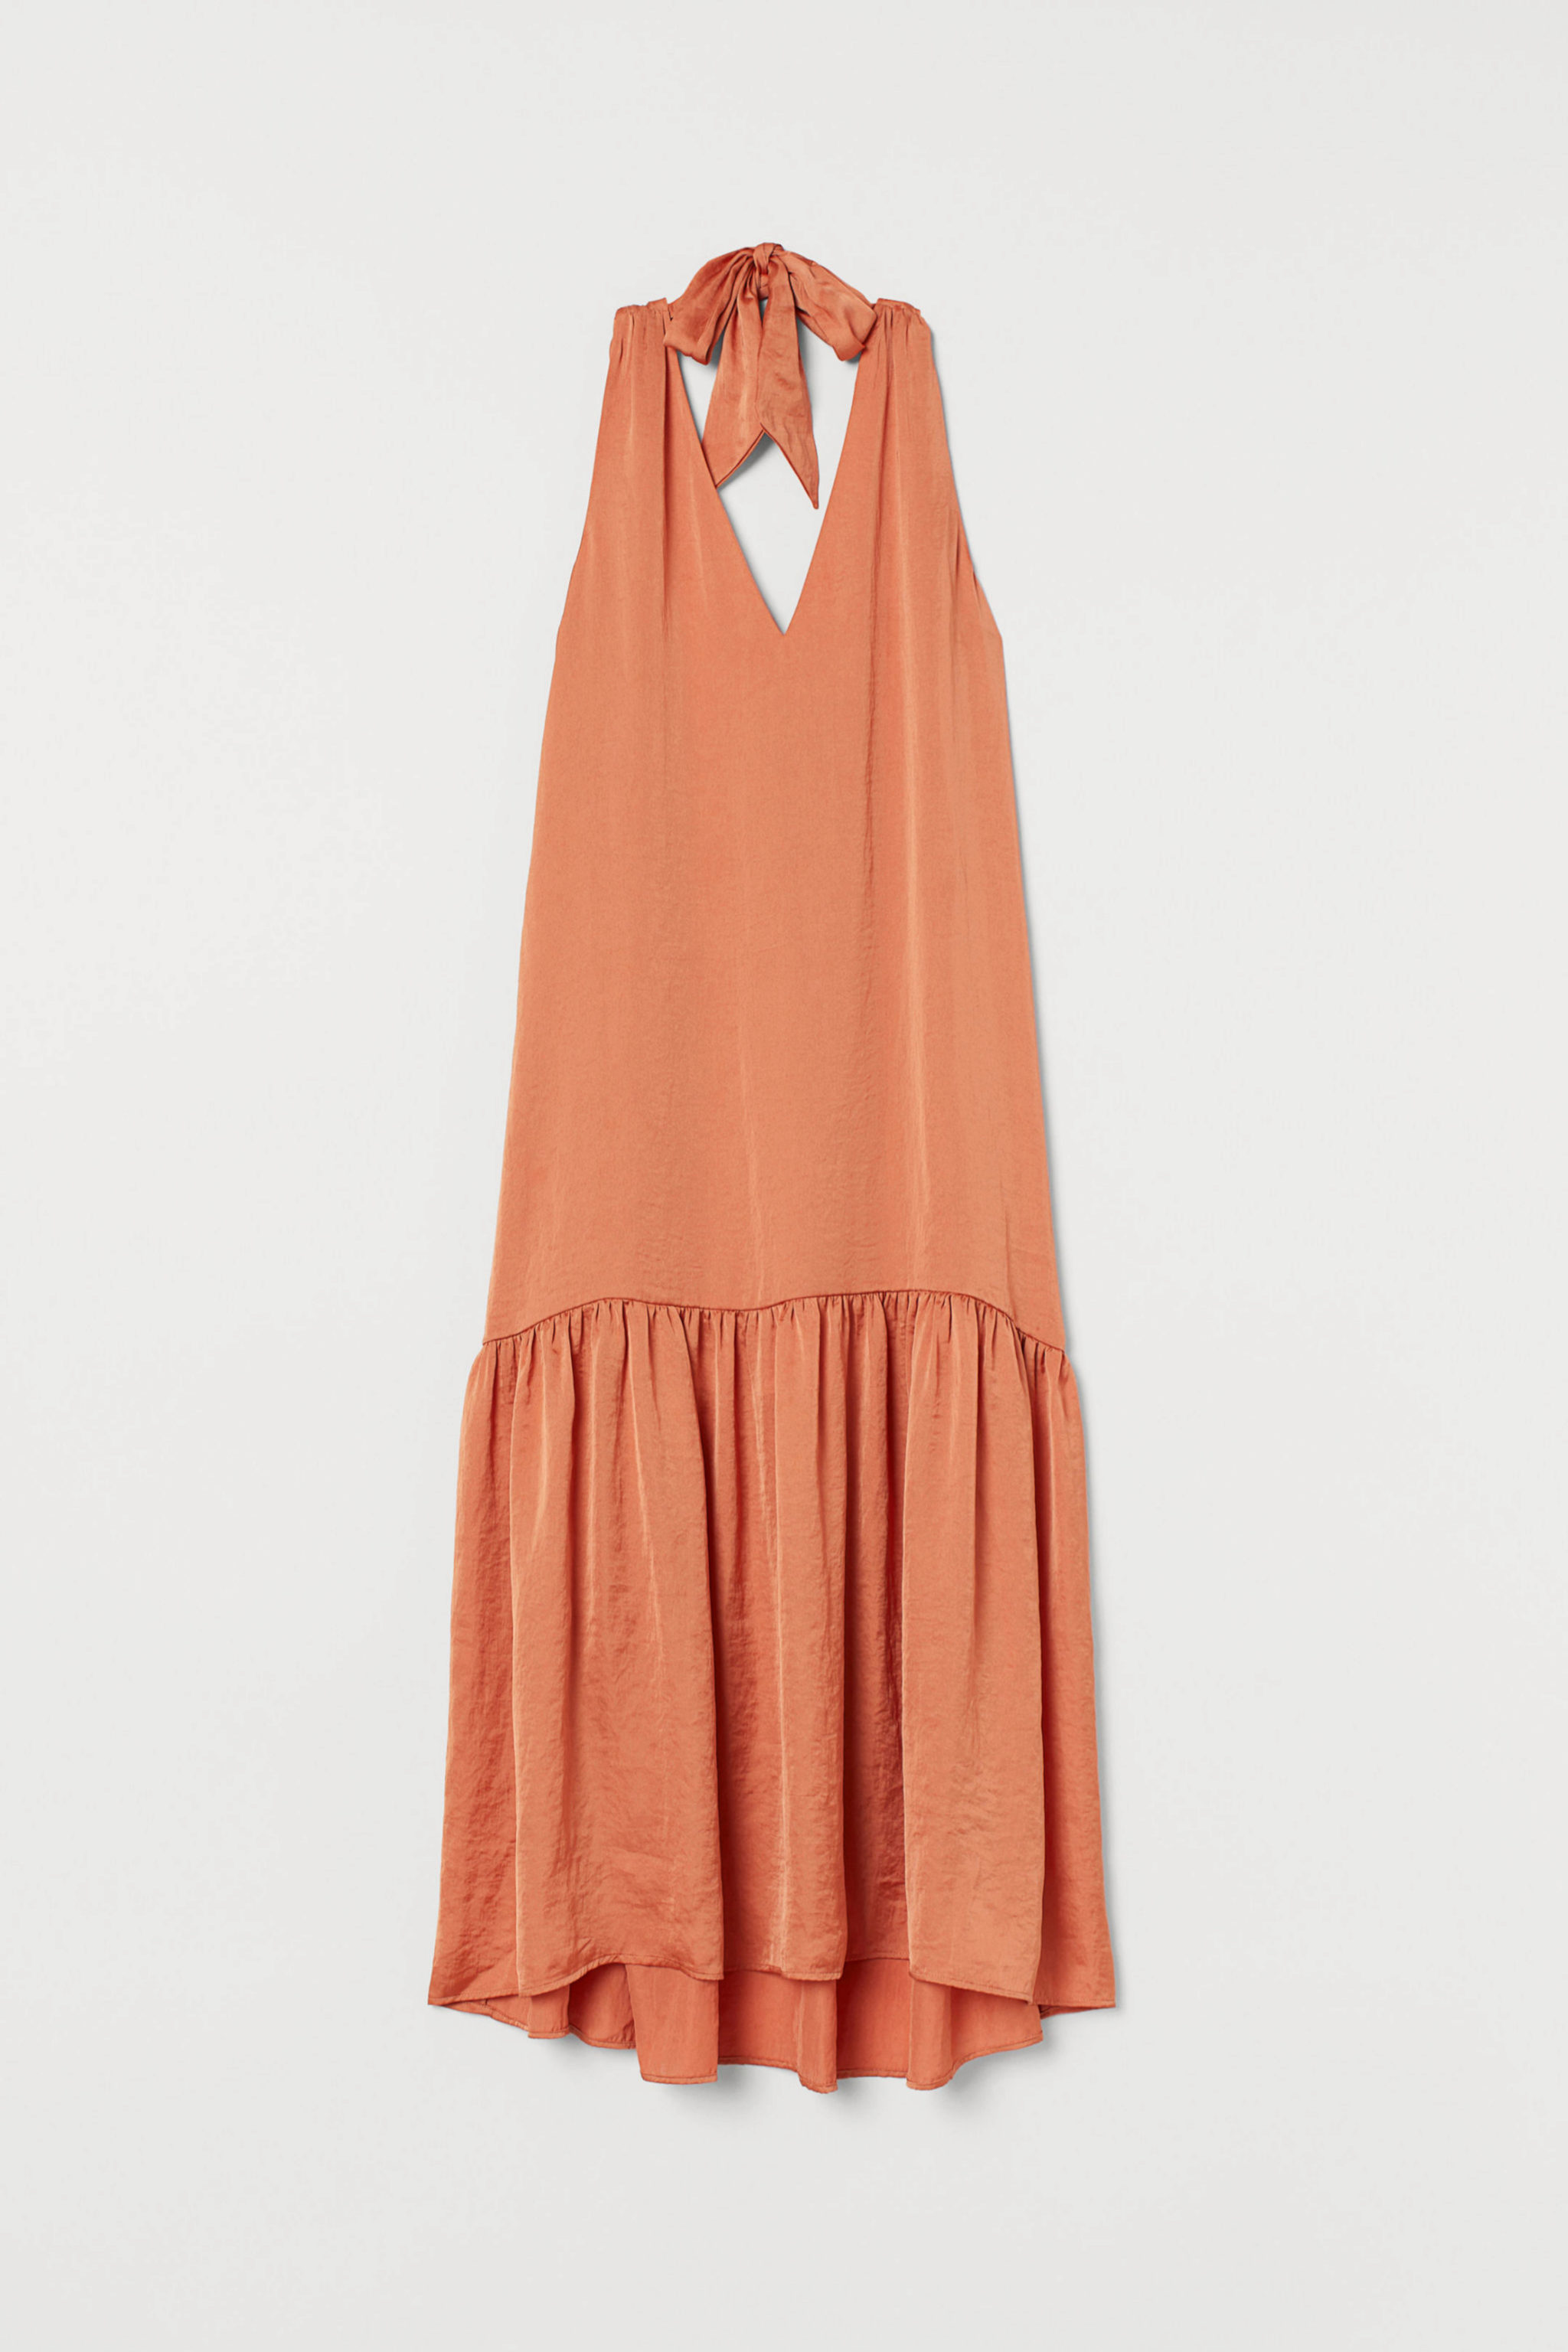 Vestido satinado en color melocotn de H&M (59,99)